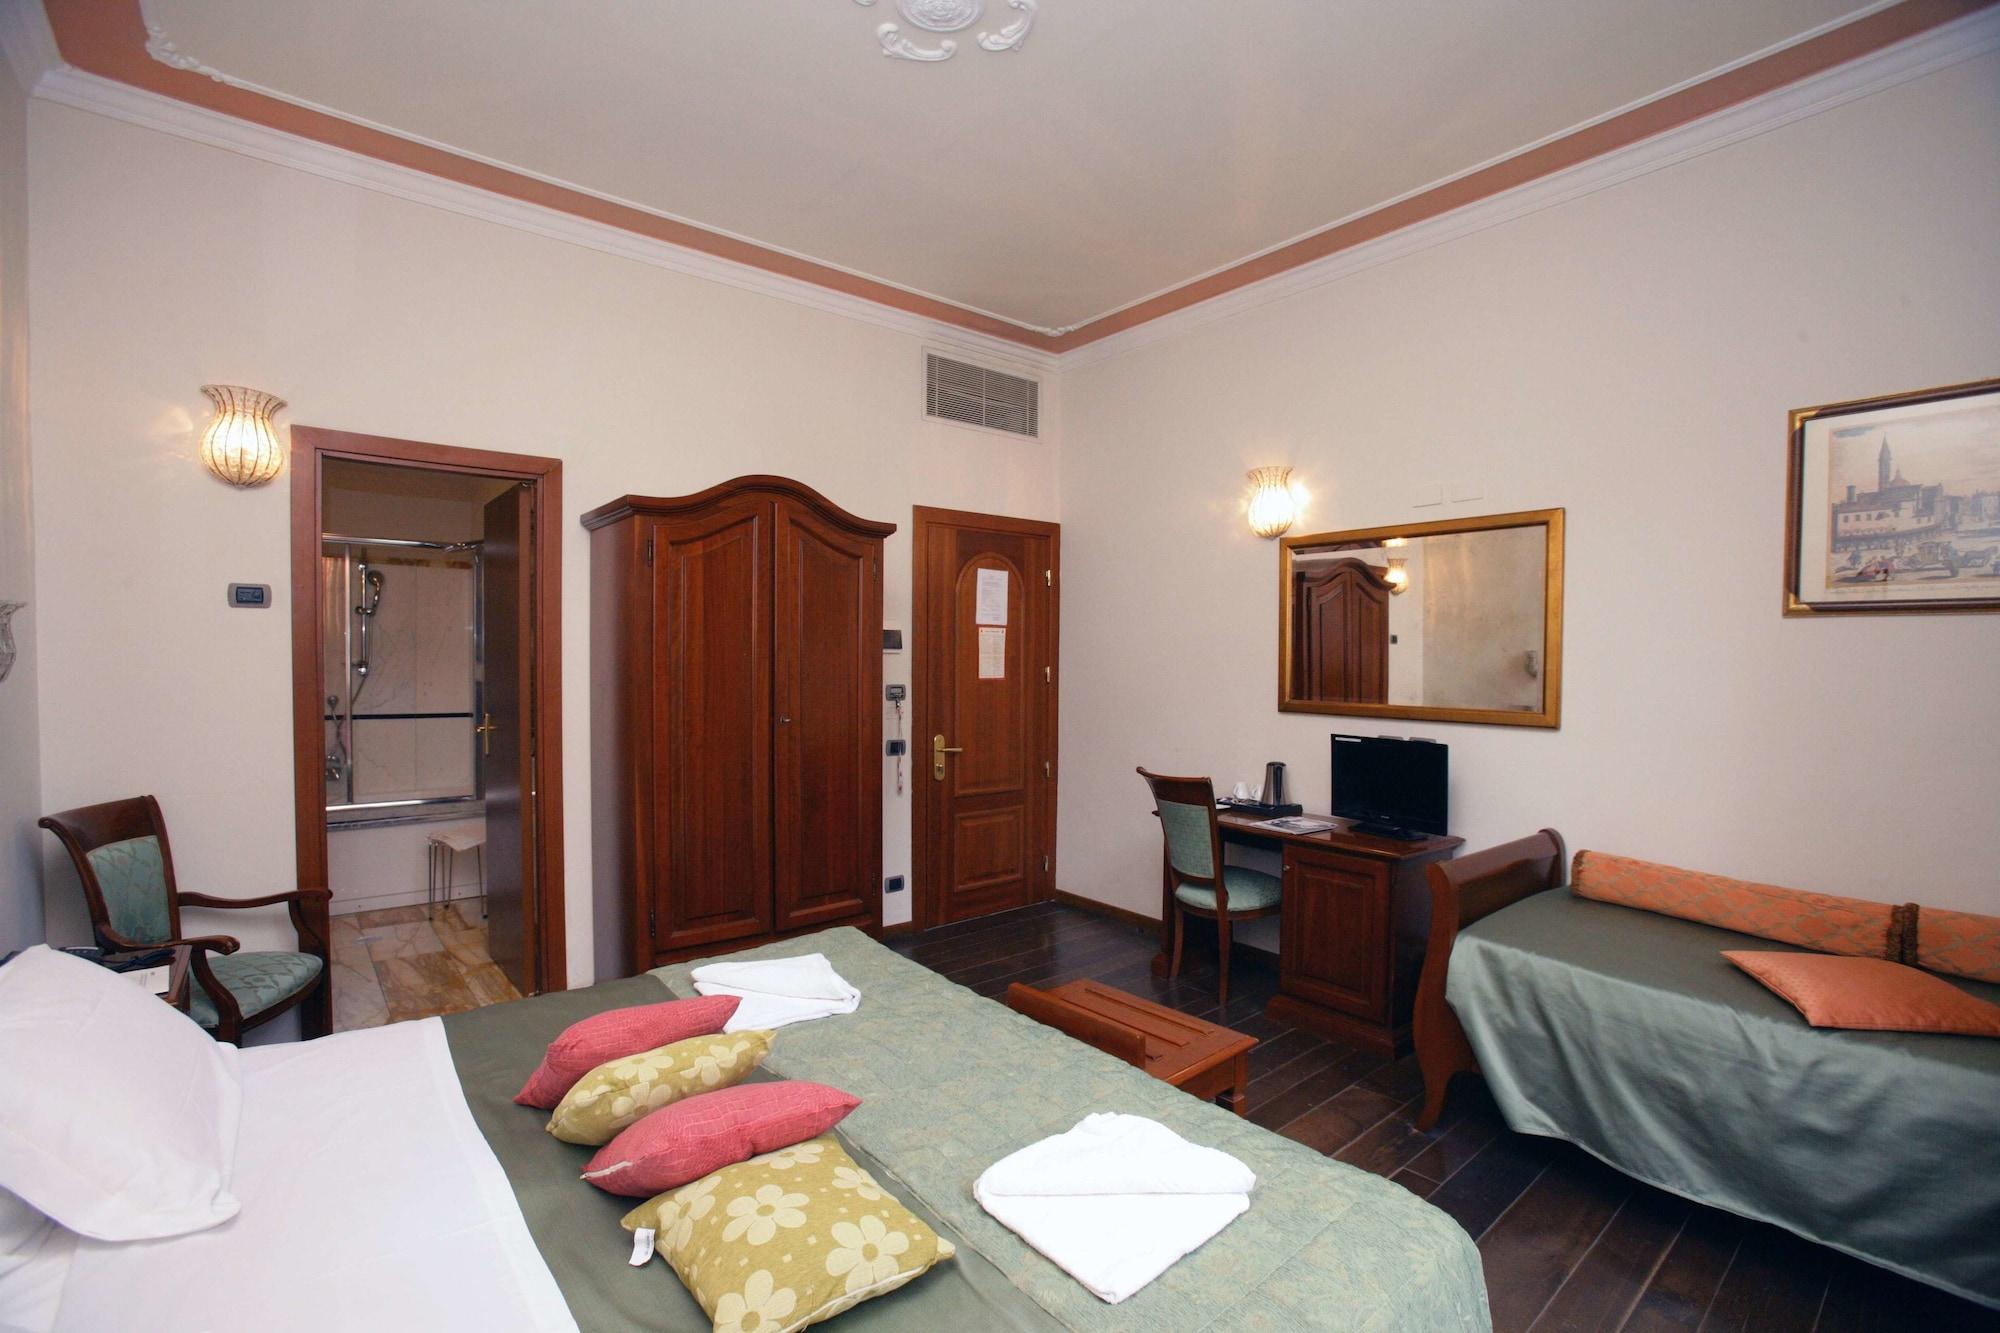 Domus Florentiae Hotel Florencja Zewnętrze zdjęcie